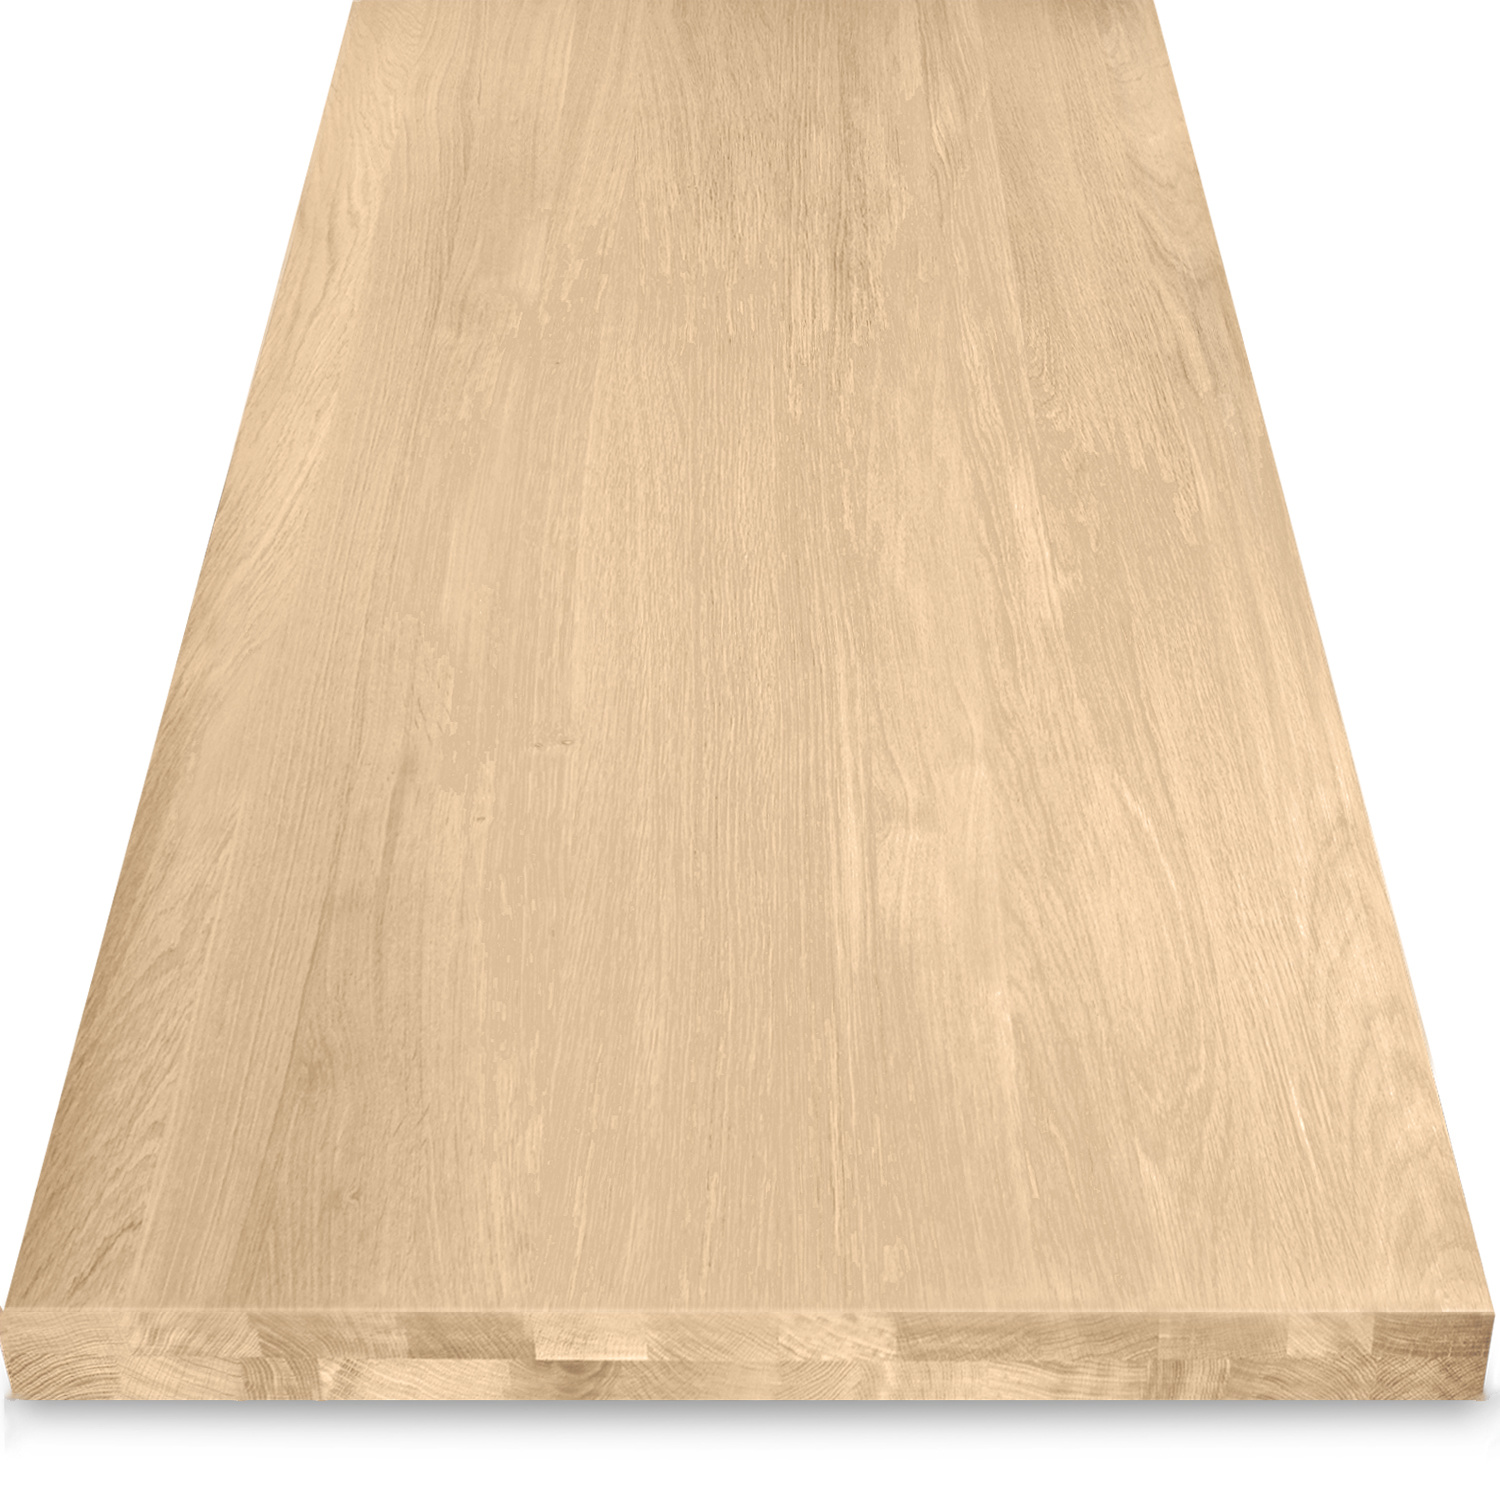  Eiken tafelblad op maat - OPGEDIKT - 4,6 cm dik (2-laags rondom) - foutvrij Europees eikenhout - verlijmd kd 8-12% - 50-120x50-260 cm